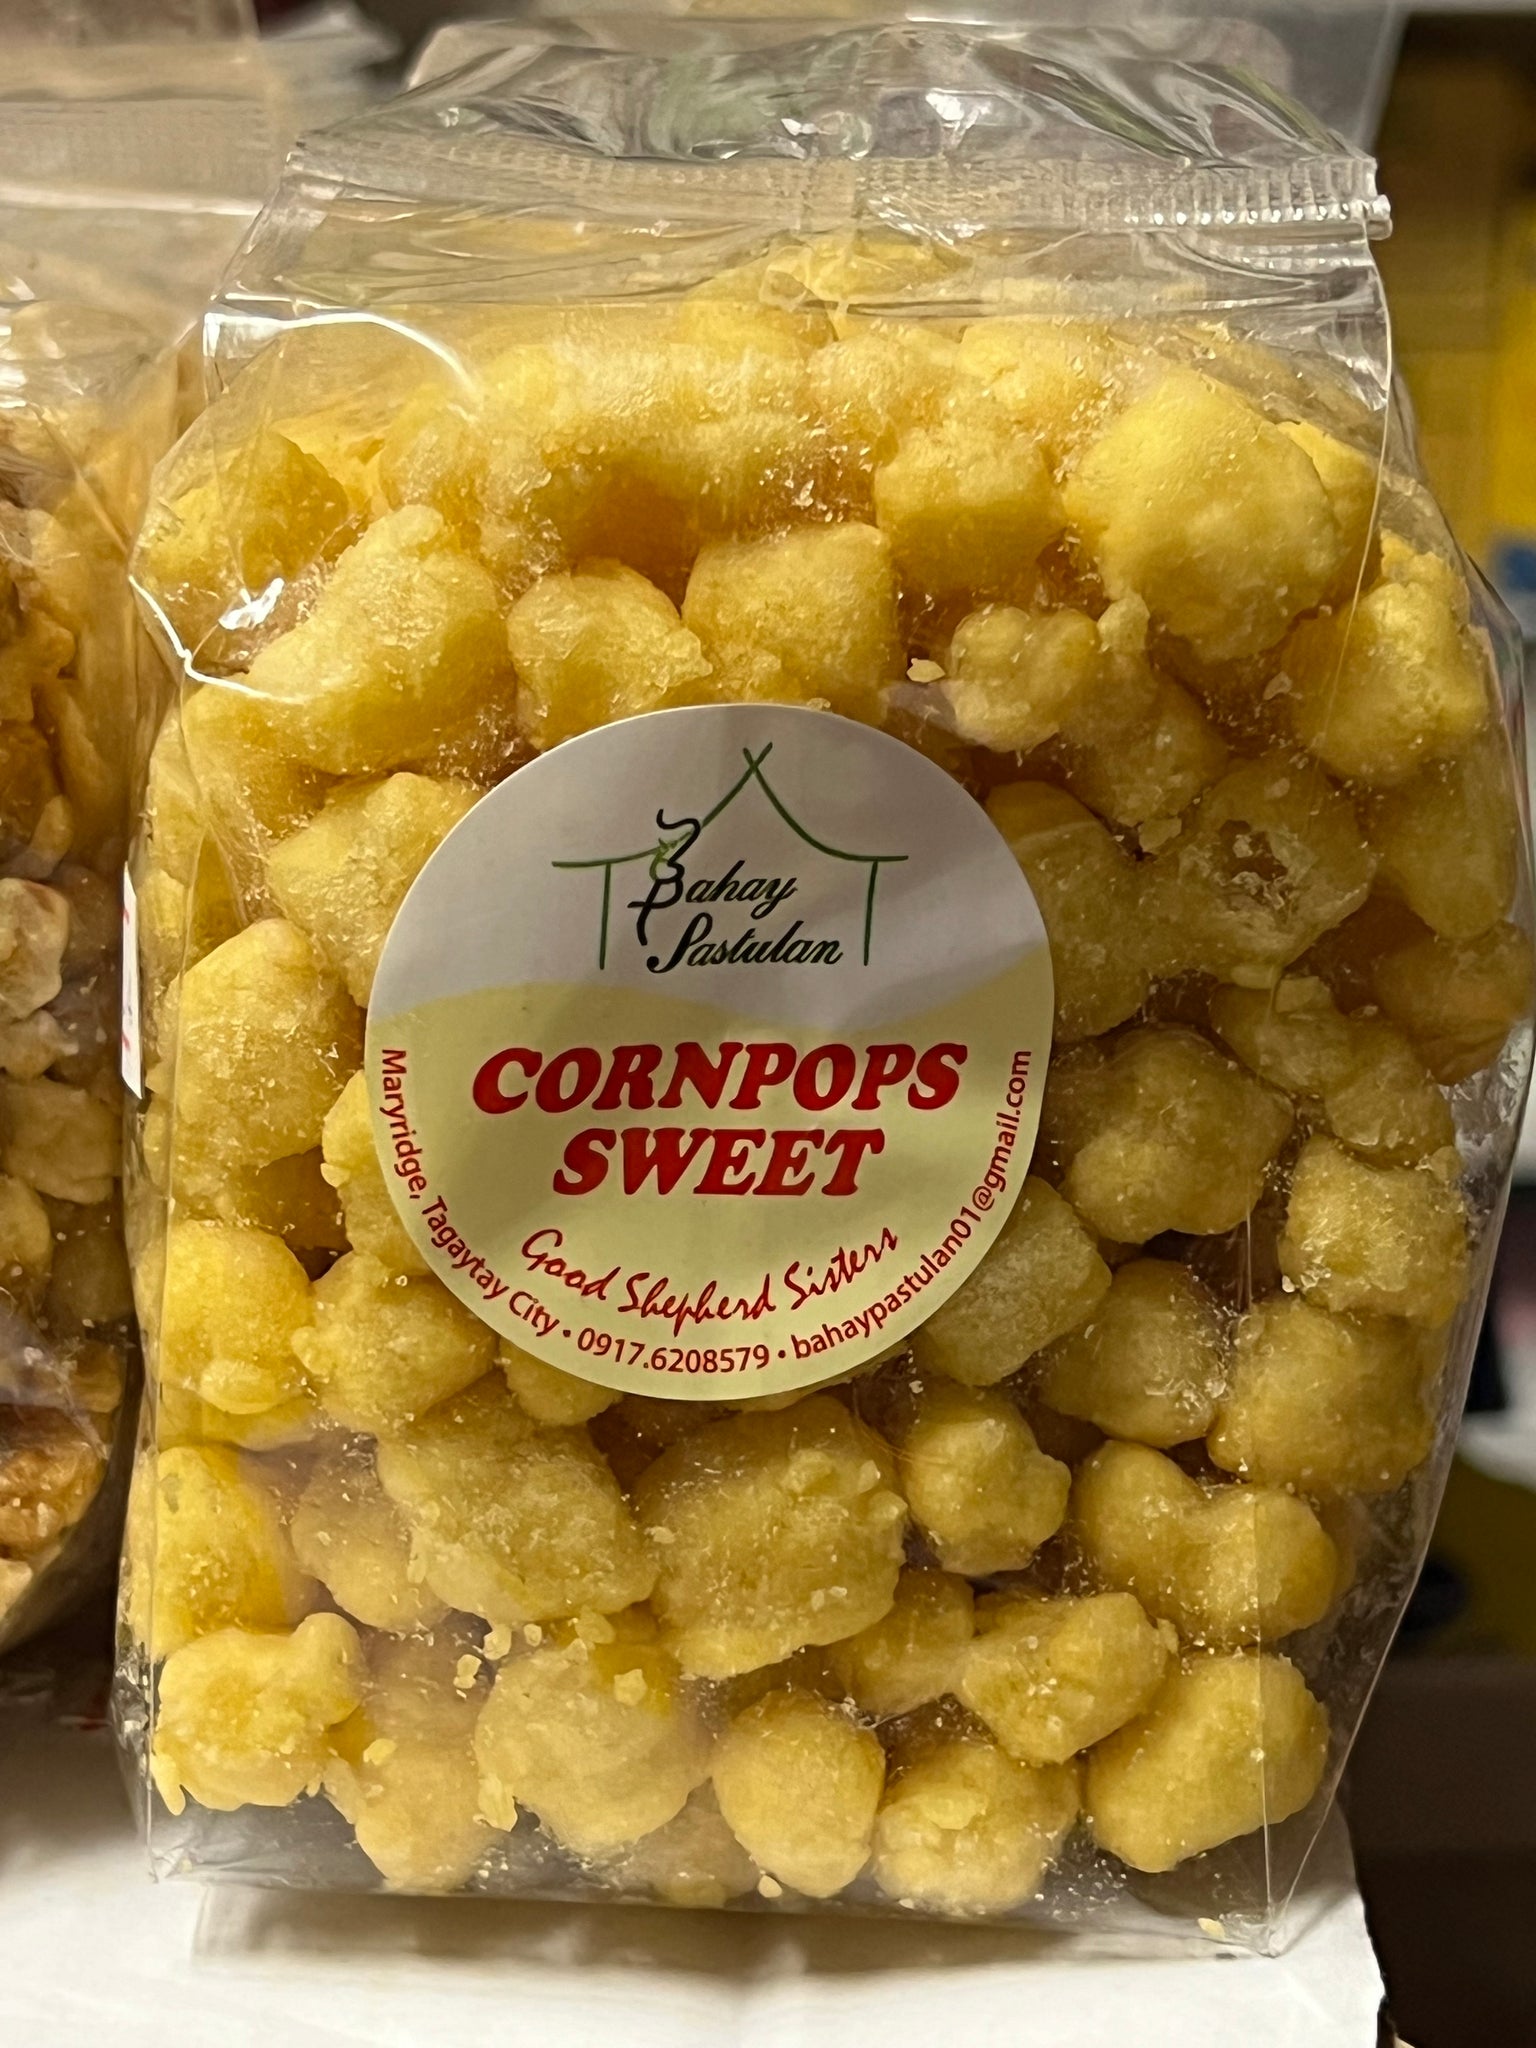 Good Shepherd Corn Pops (Sweet Corn Flavor)